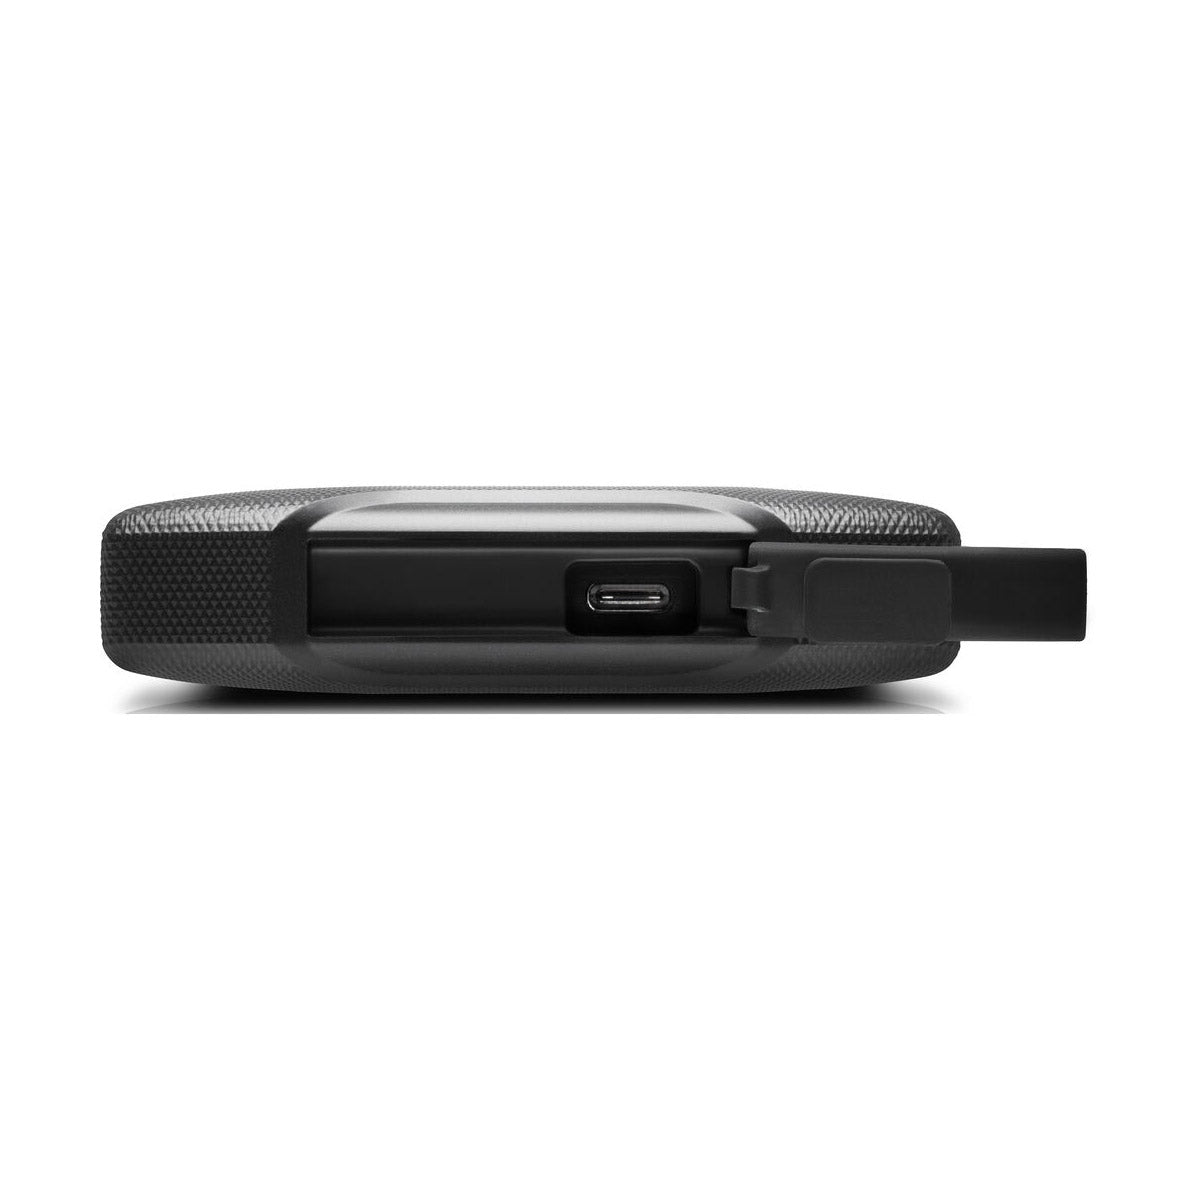 SanDisk Professional 4TB G-DRIVE ArmorATD USB 3.2 / USB 3.1 Gen 1 External Hard Drive